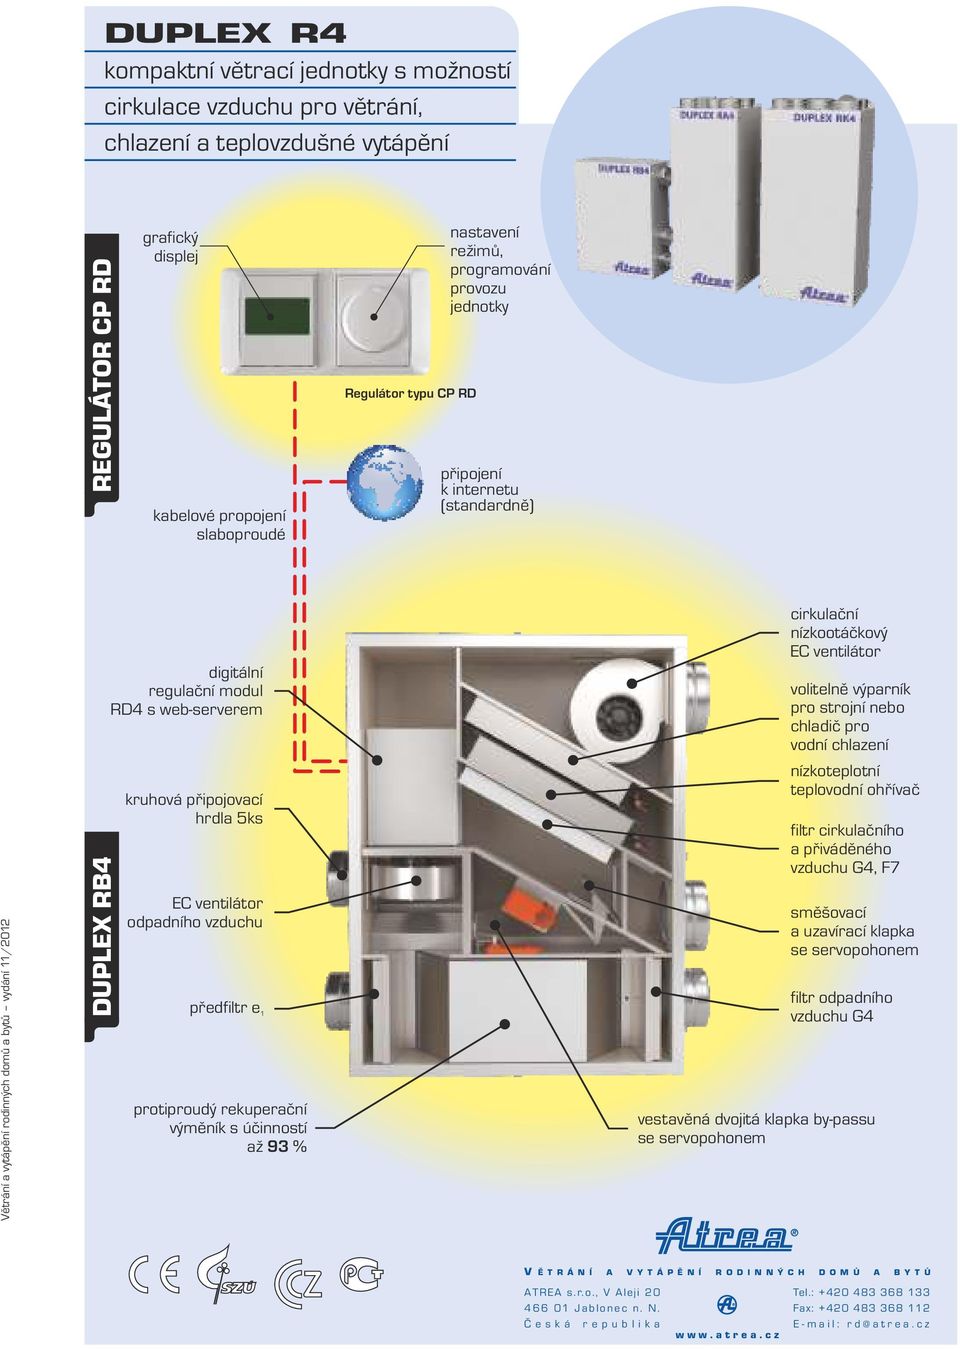 připojovací hrdla 5ks EC ventilátor odpadního vzduchu předfiltr protiproudý rekuperační výměník s účinnoí až 9 % cirkulační nízkootáčkový EC ventilátor volitelně výparník pro rojní nebo chladič pro